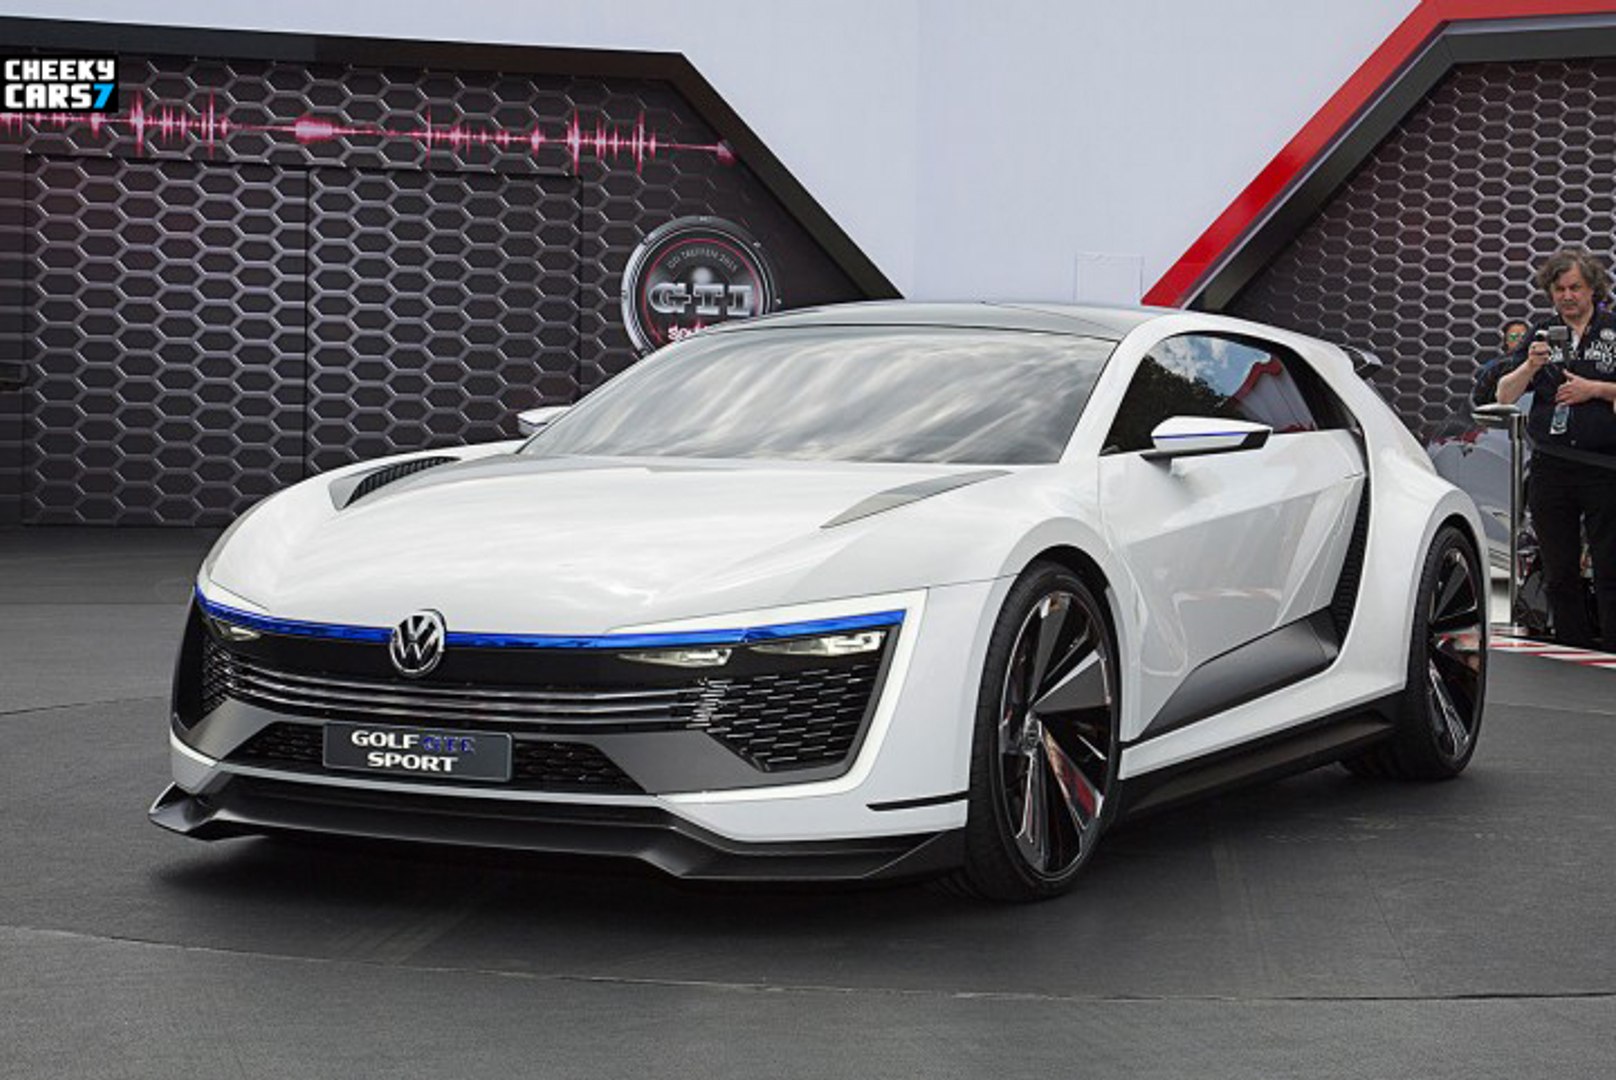 Volkswagen Golf GTE Sport Concept 2015 - video Dailymotion